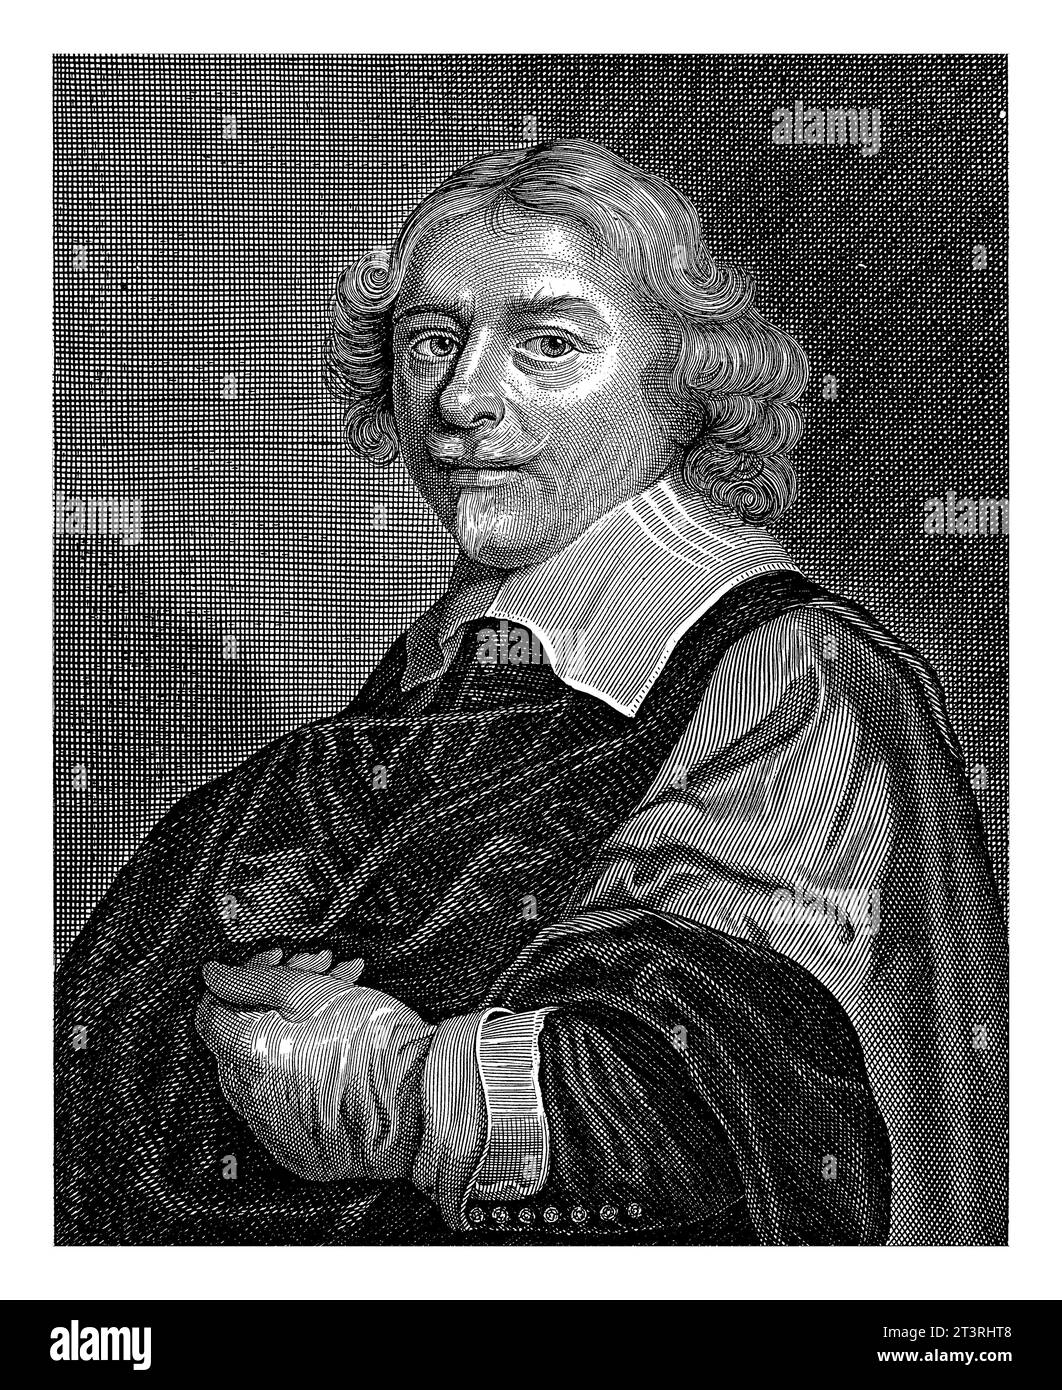 Ritratto del pittore David Bailly, Coenraet Waumans, dopo David Bailly, 1649 Ritratto del pittore David Bailly. Foto Stock